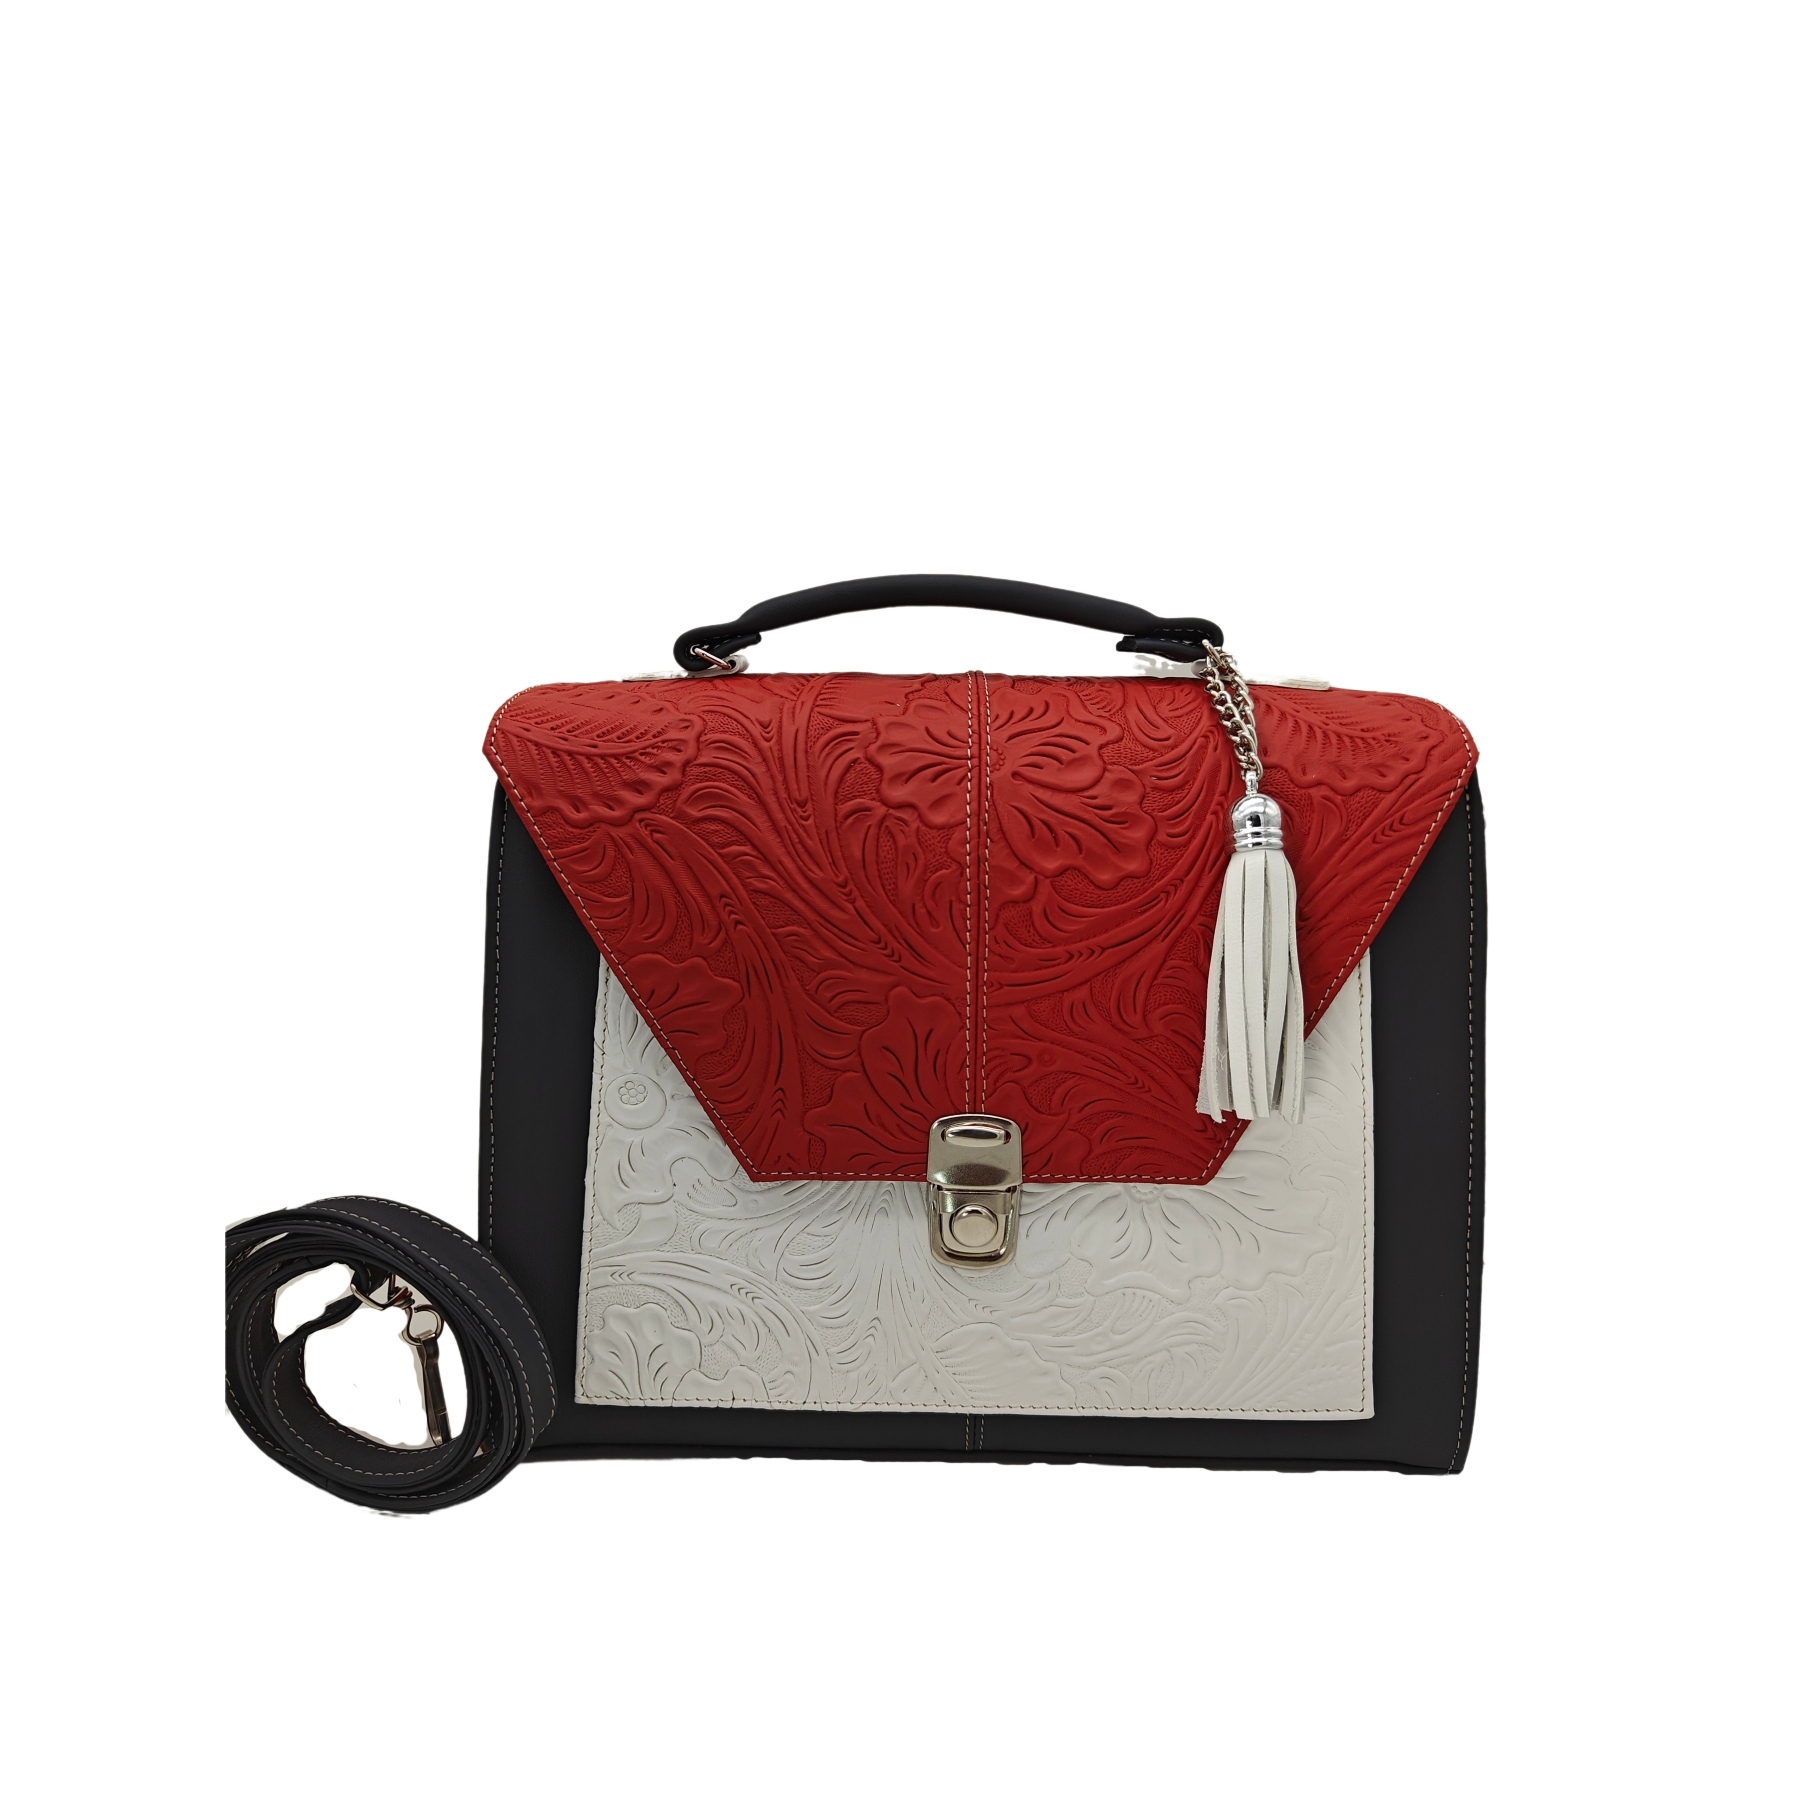 Mochila Fila Roja Backpack Lisa Color Rojo Diseño de la tela Liso